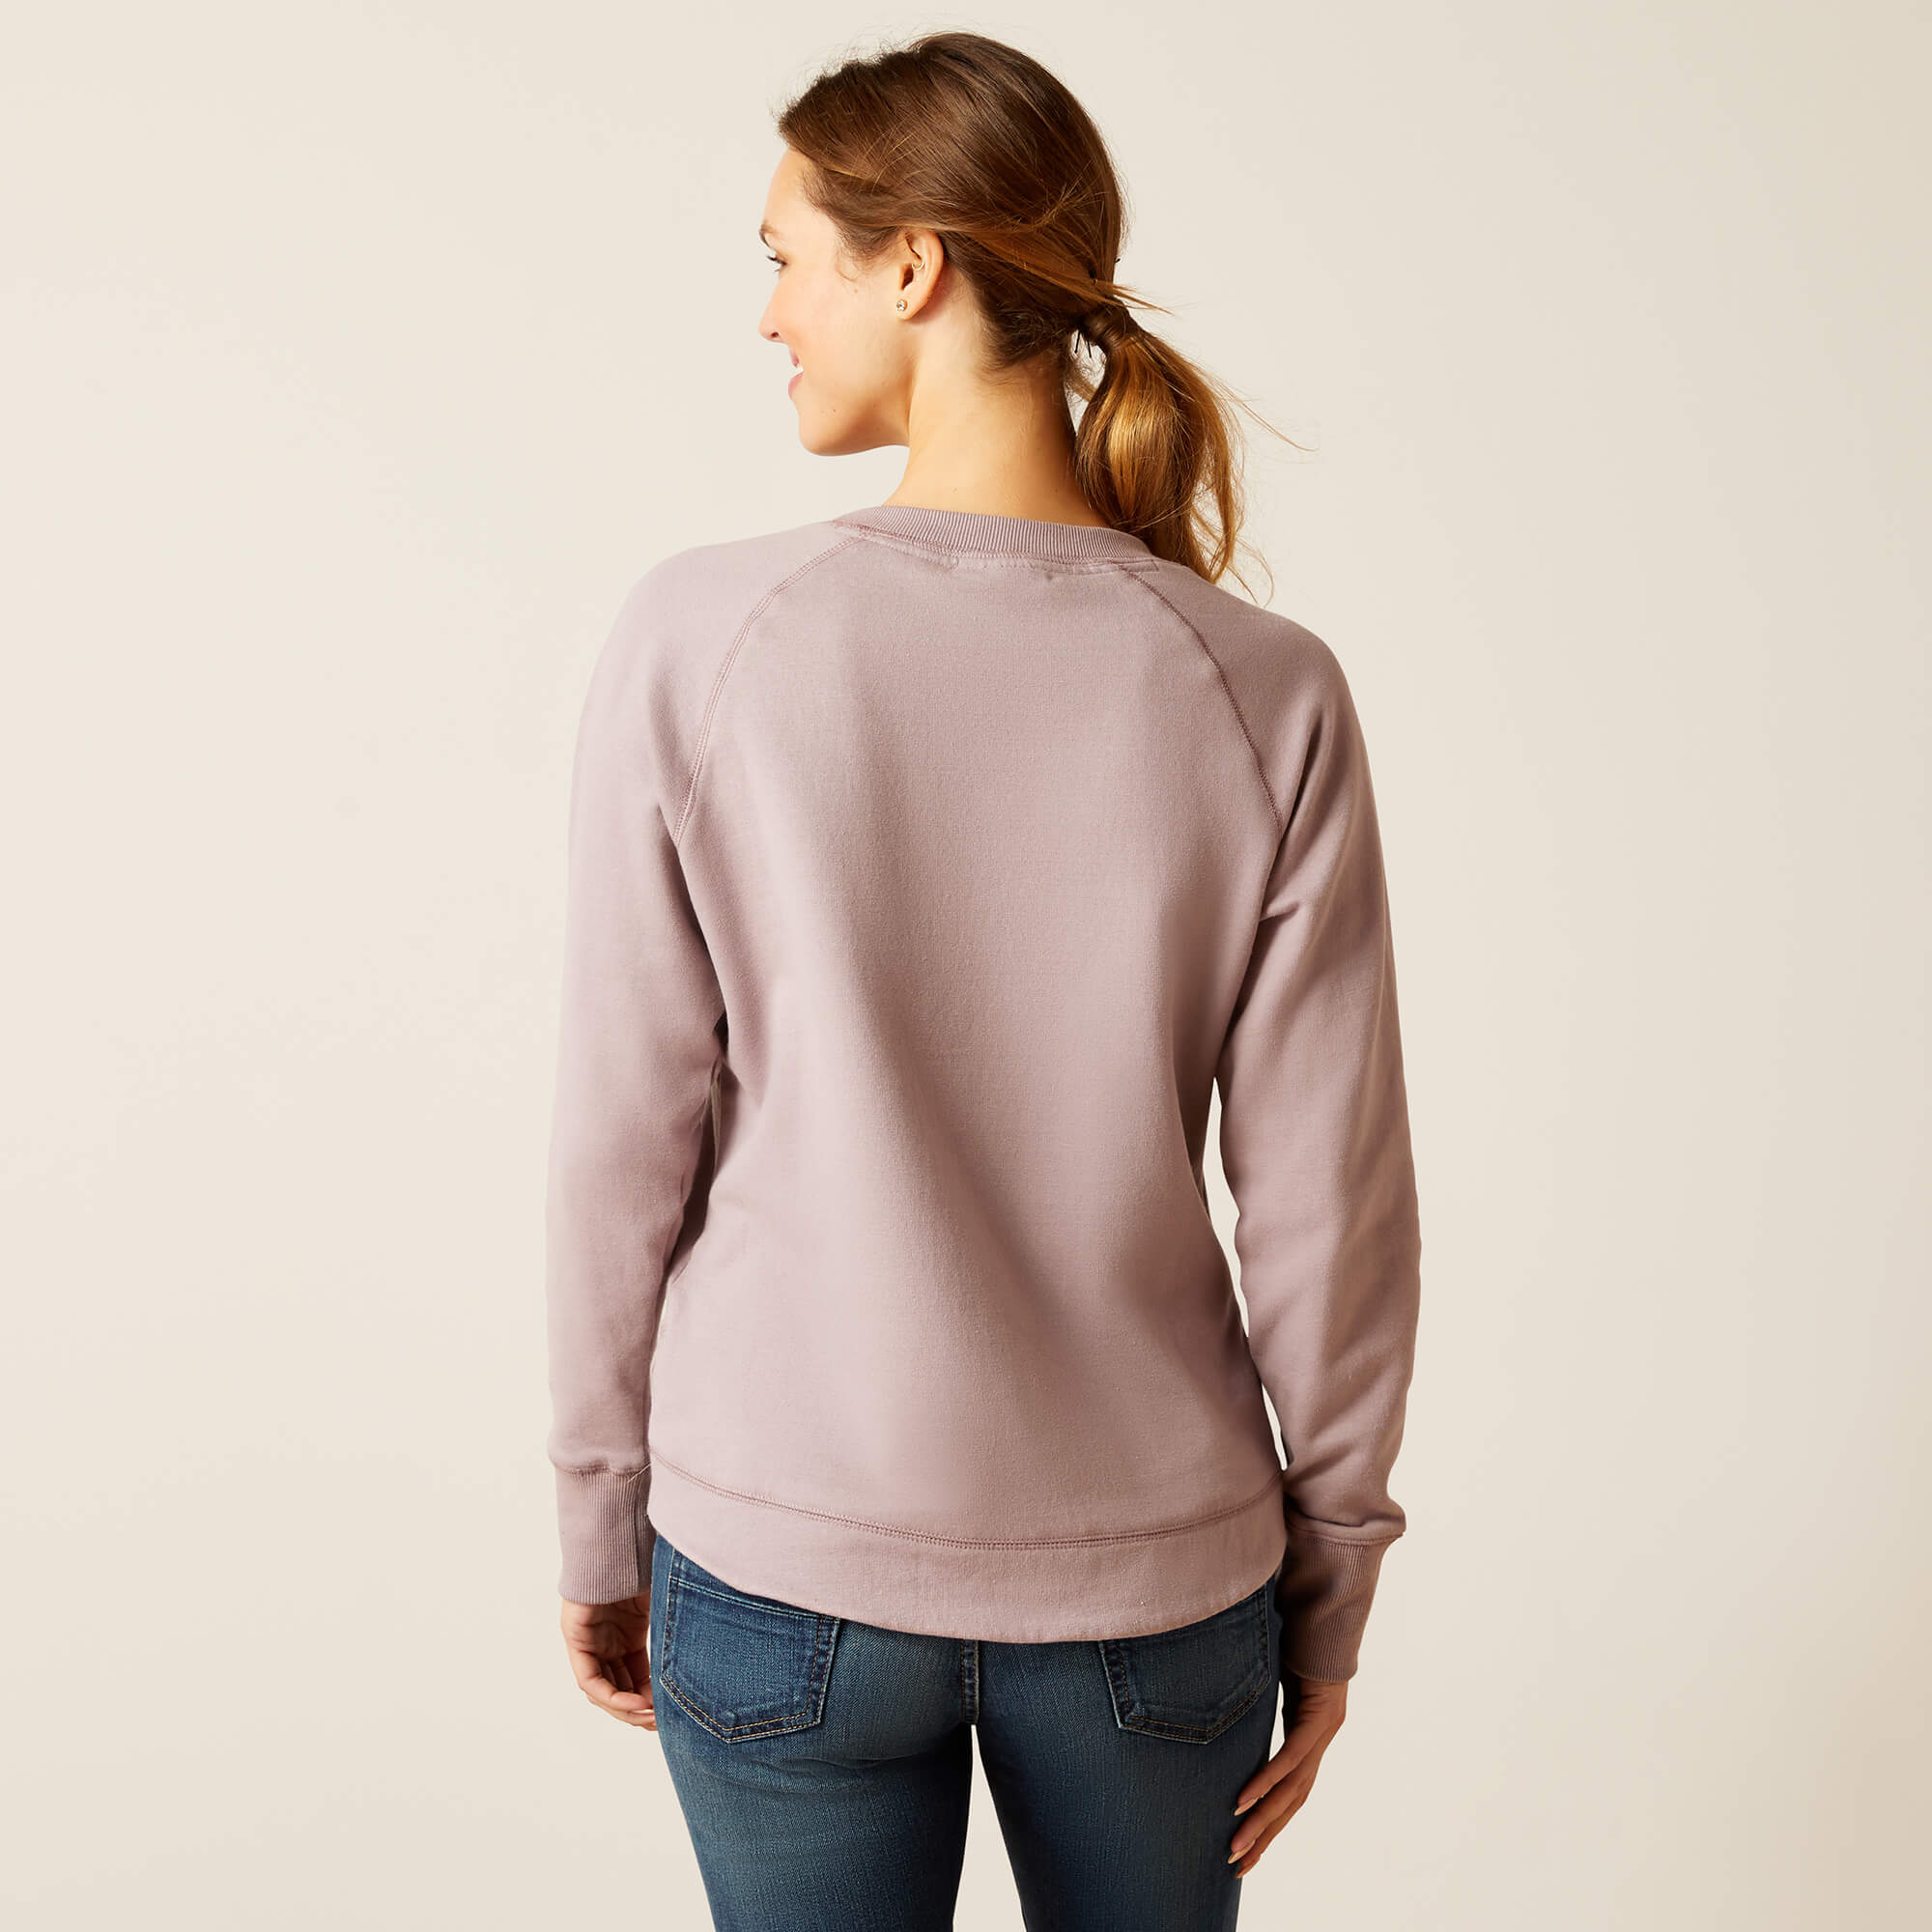 Ariat Women's Benica Sweatshirt